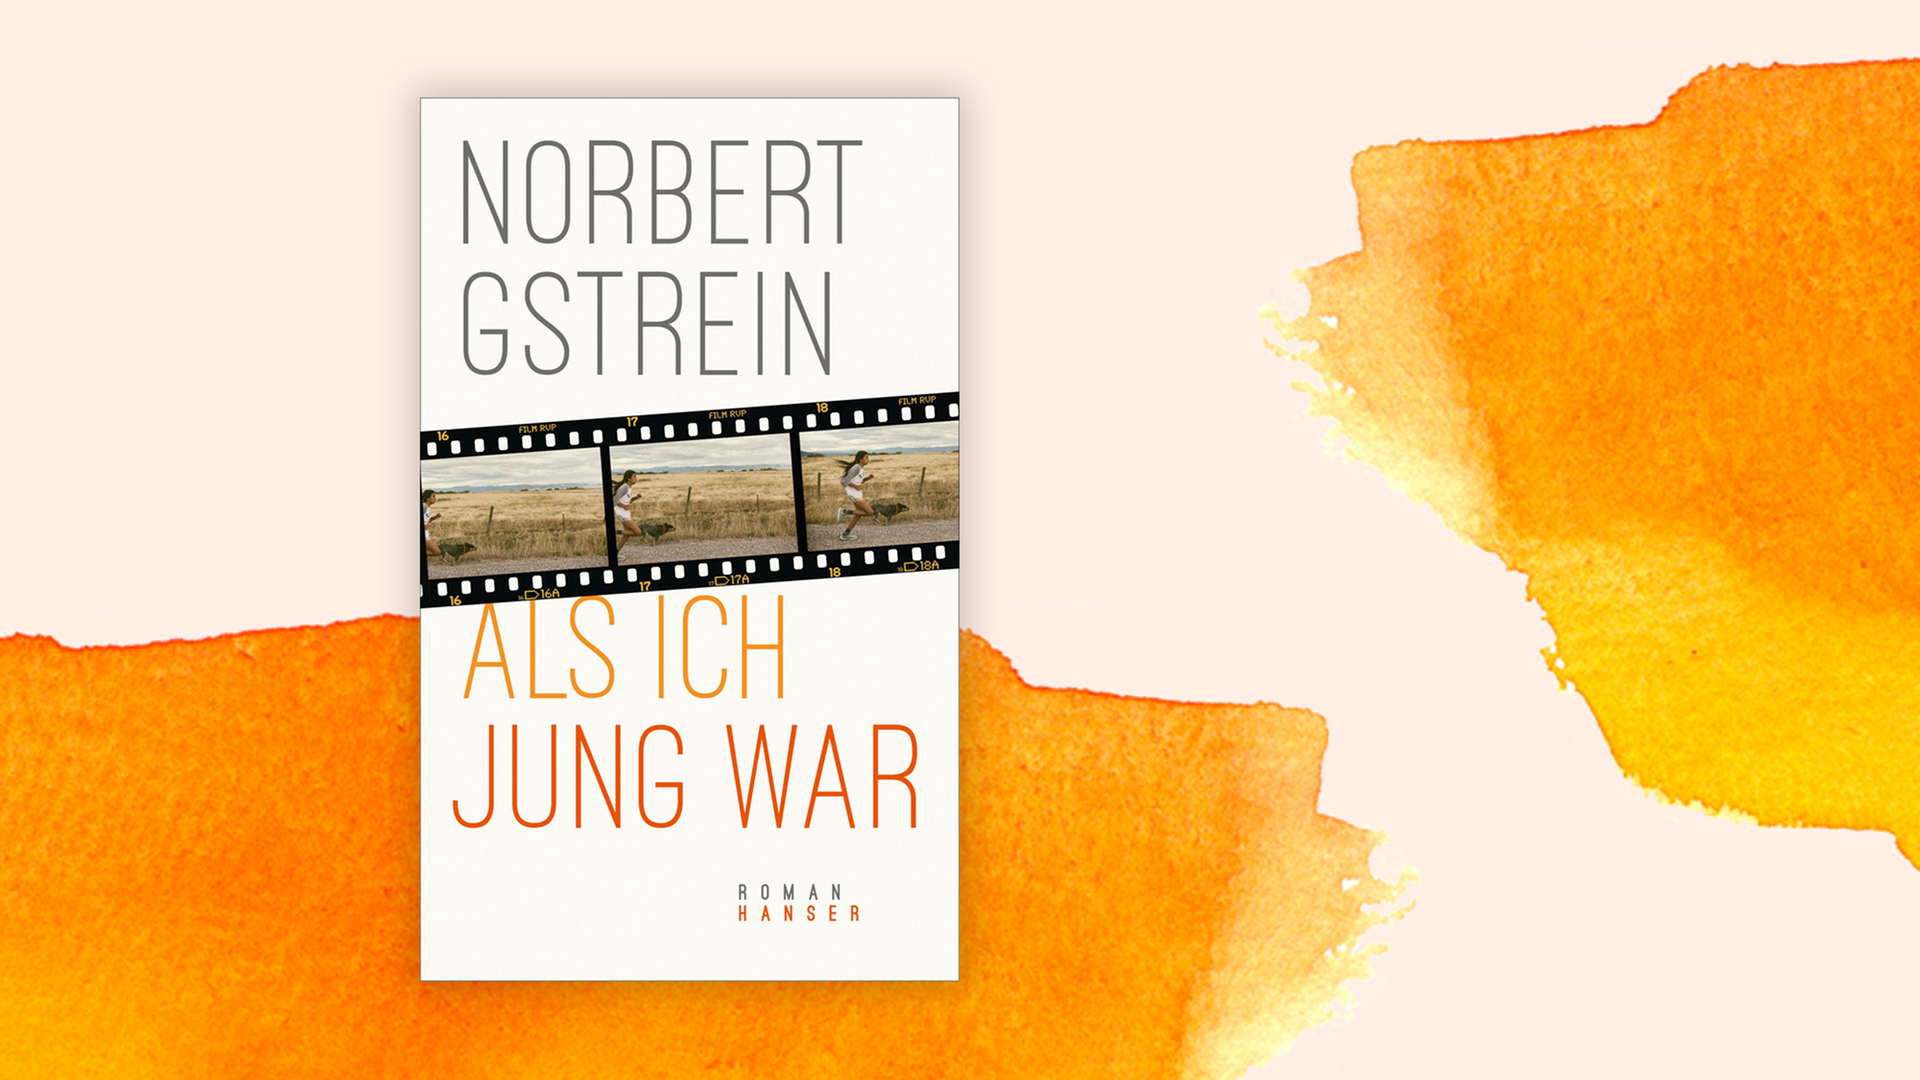 Cover des Buches "Als ich jung war" von Norbert Gstrein.